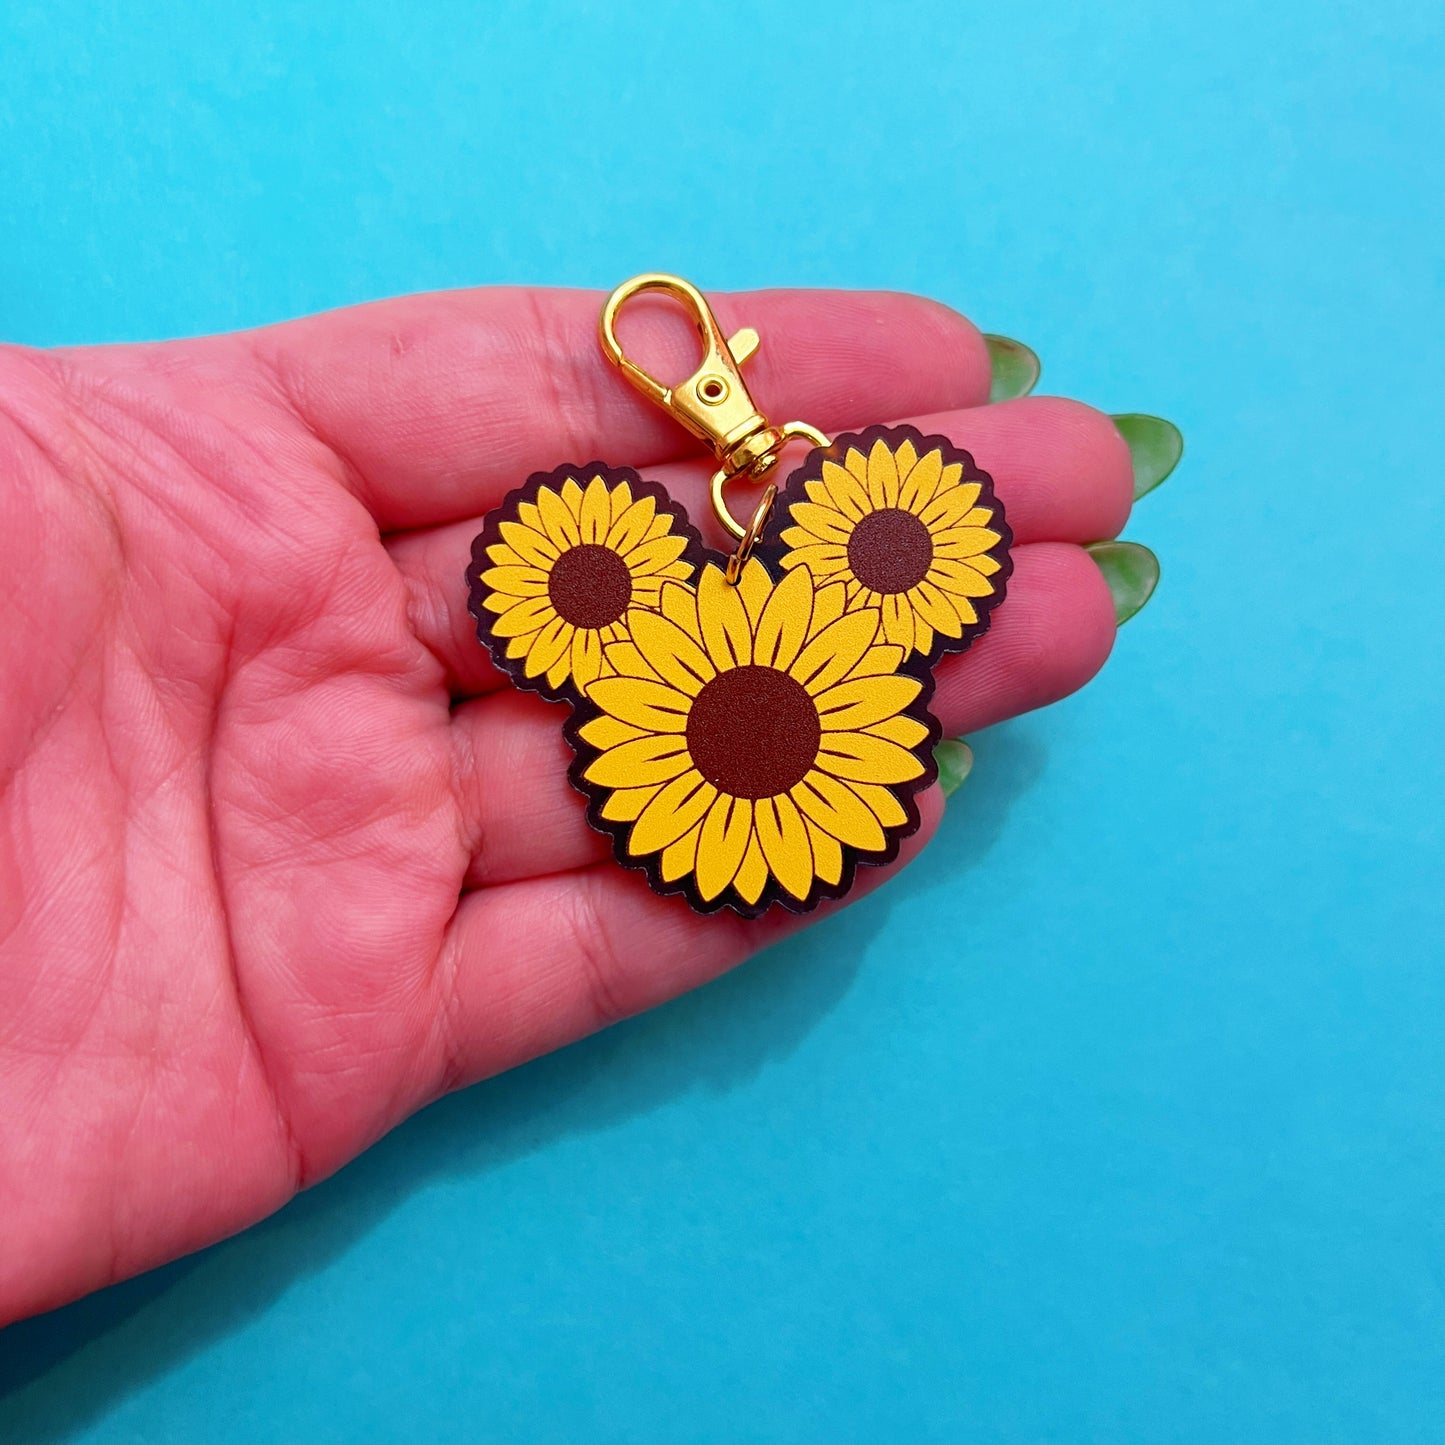 Mouse Sunflower Bag Charm/Keychain